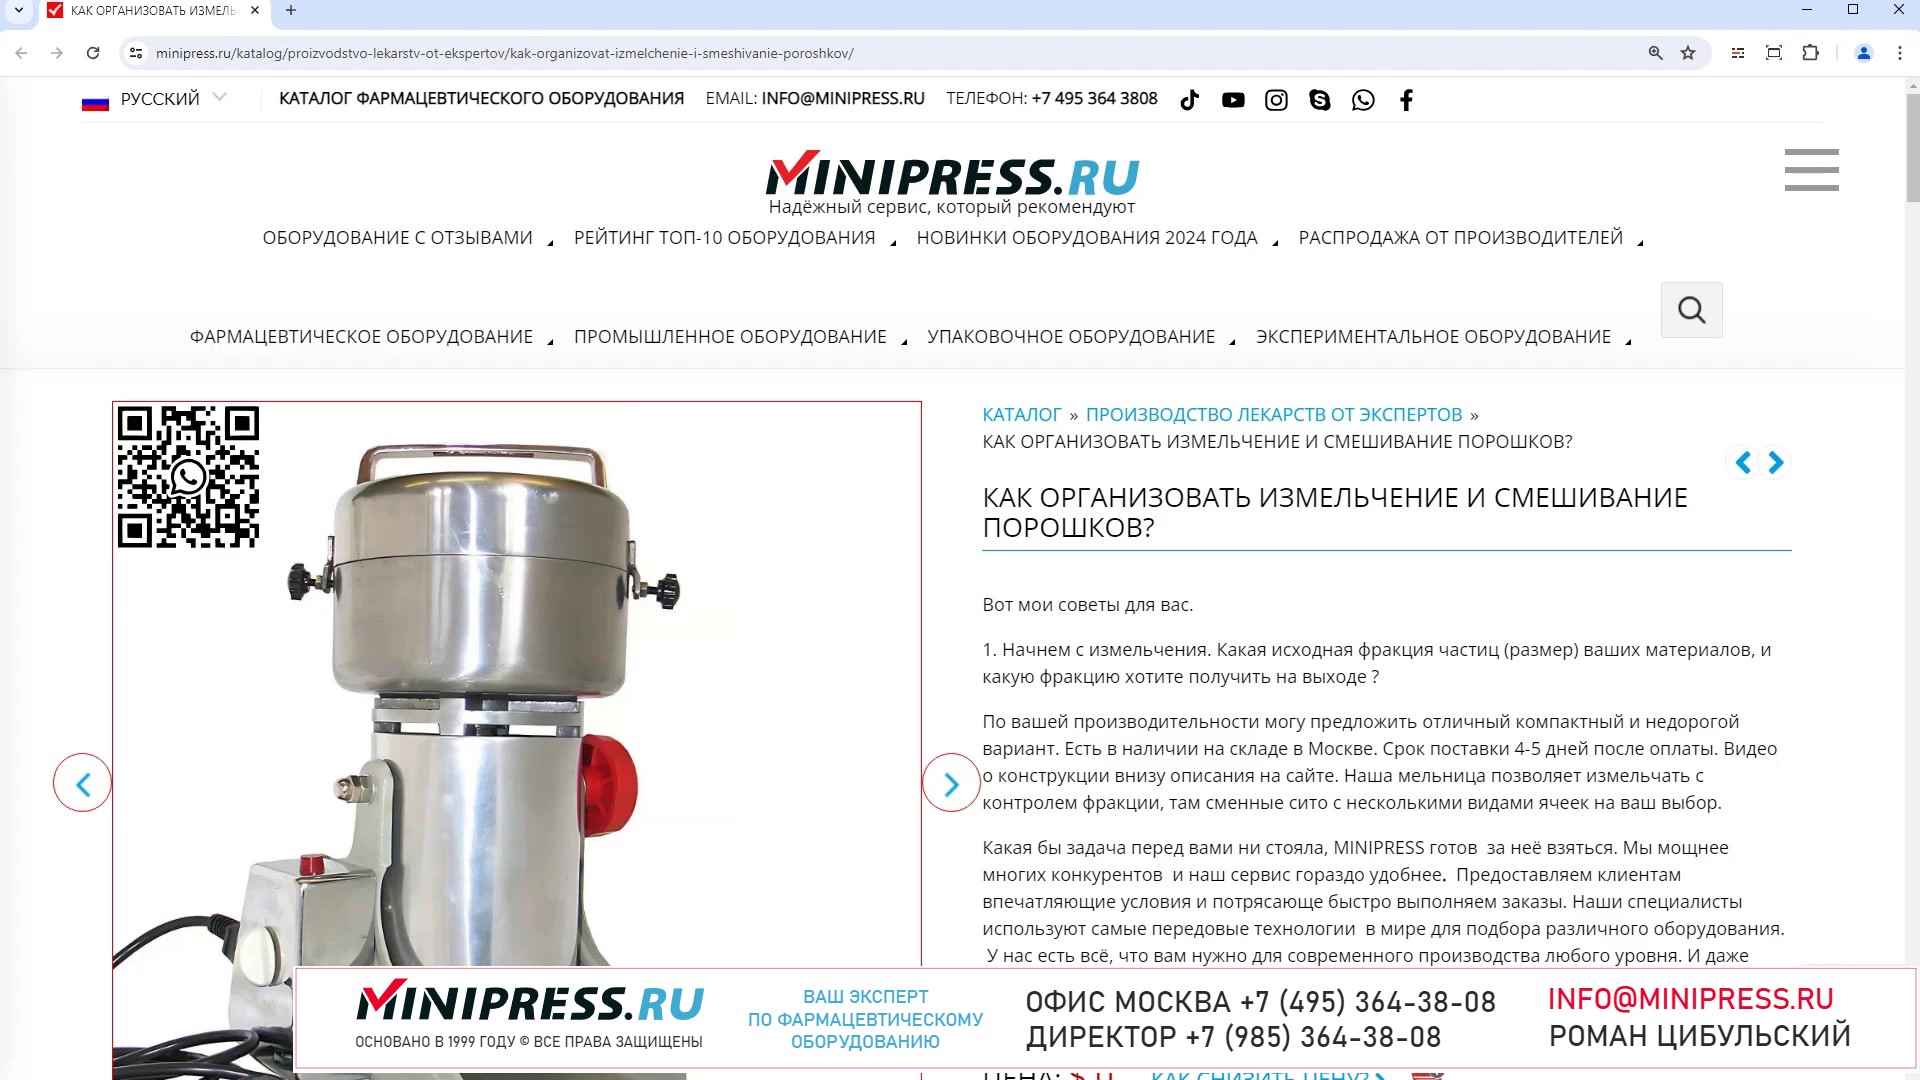 Minipress.ru КАК ОРГАНИЗОВАТЬ ИЗМЕЛЬЧЕНИЕ И СМЕШИВАНИЕ ПОРОШКОВ